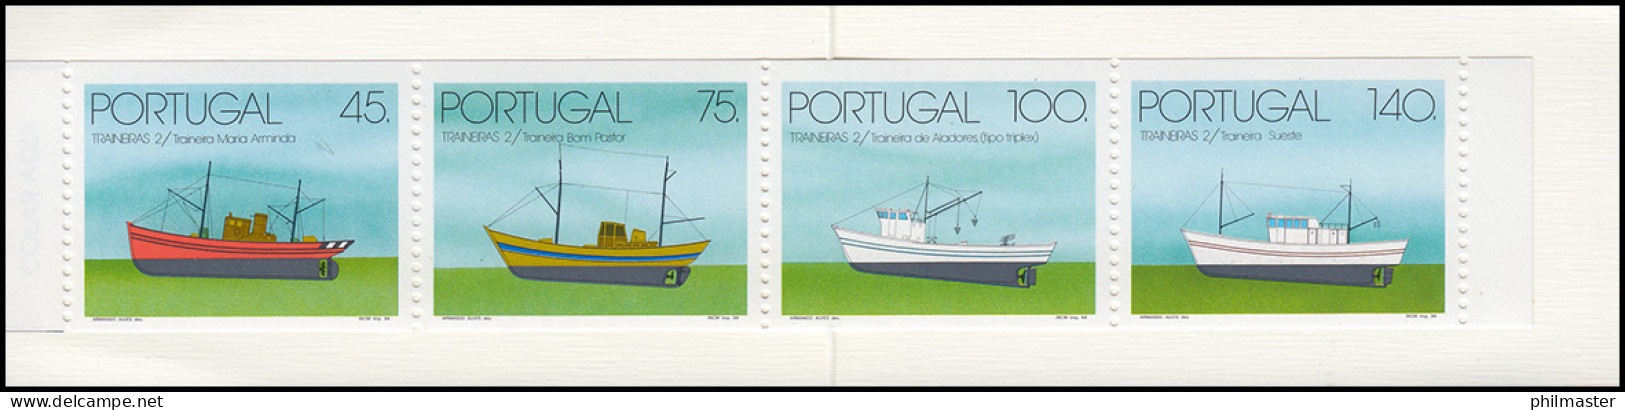 Portugal-Markenheftchen 11 Küstenfischerei Schleppnetzschiffe 1994, Postfrisch - Carnets